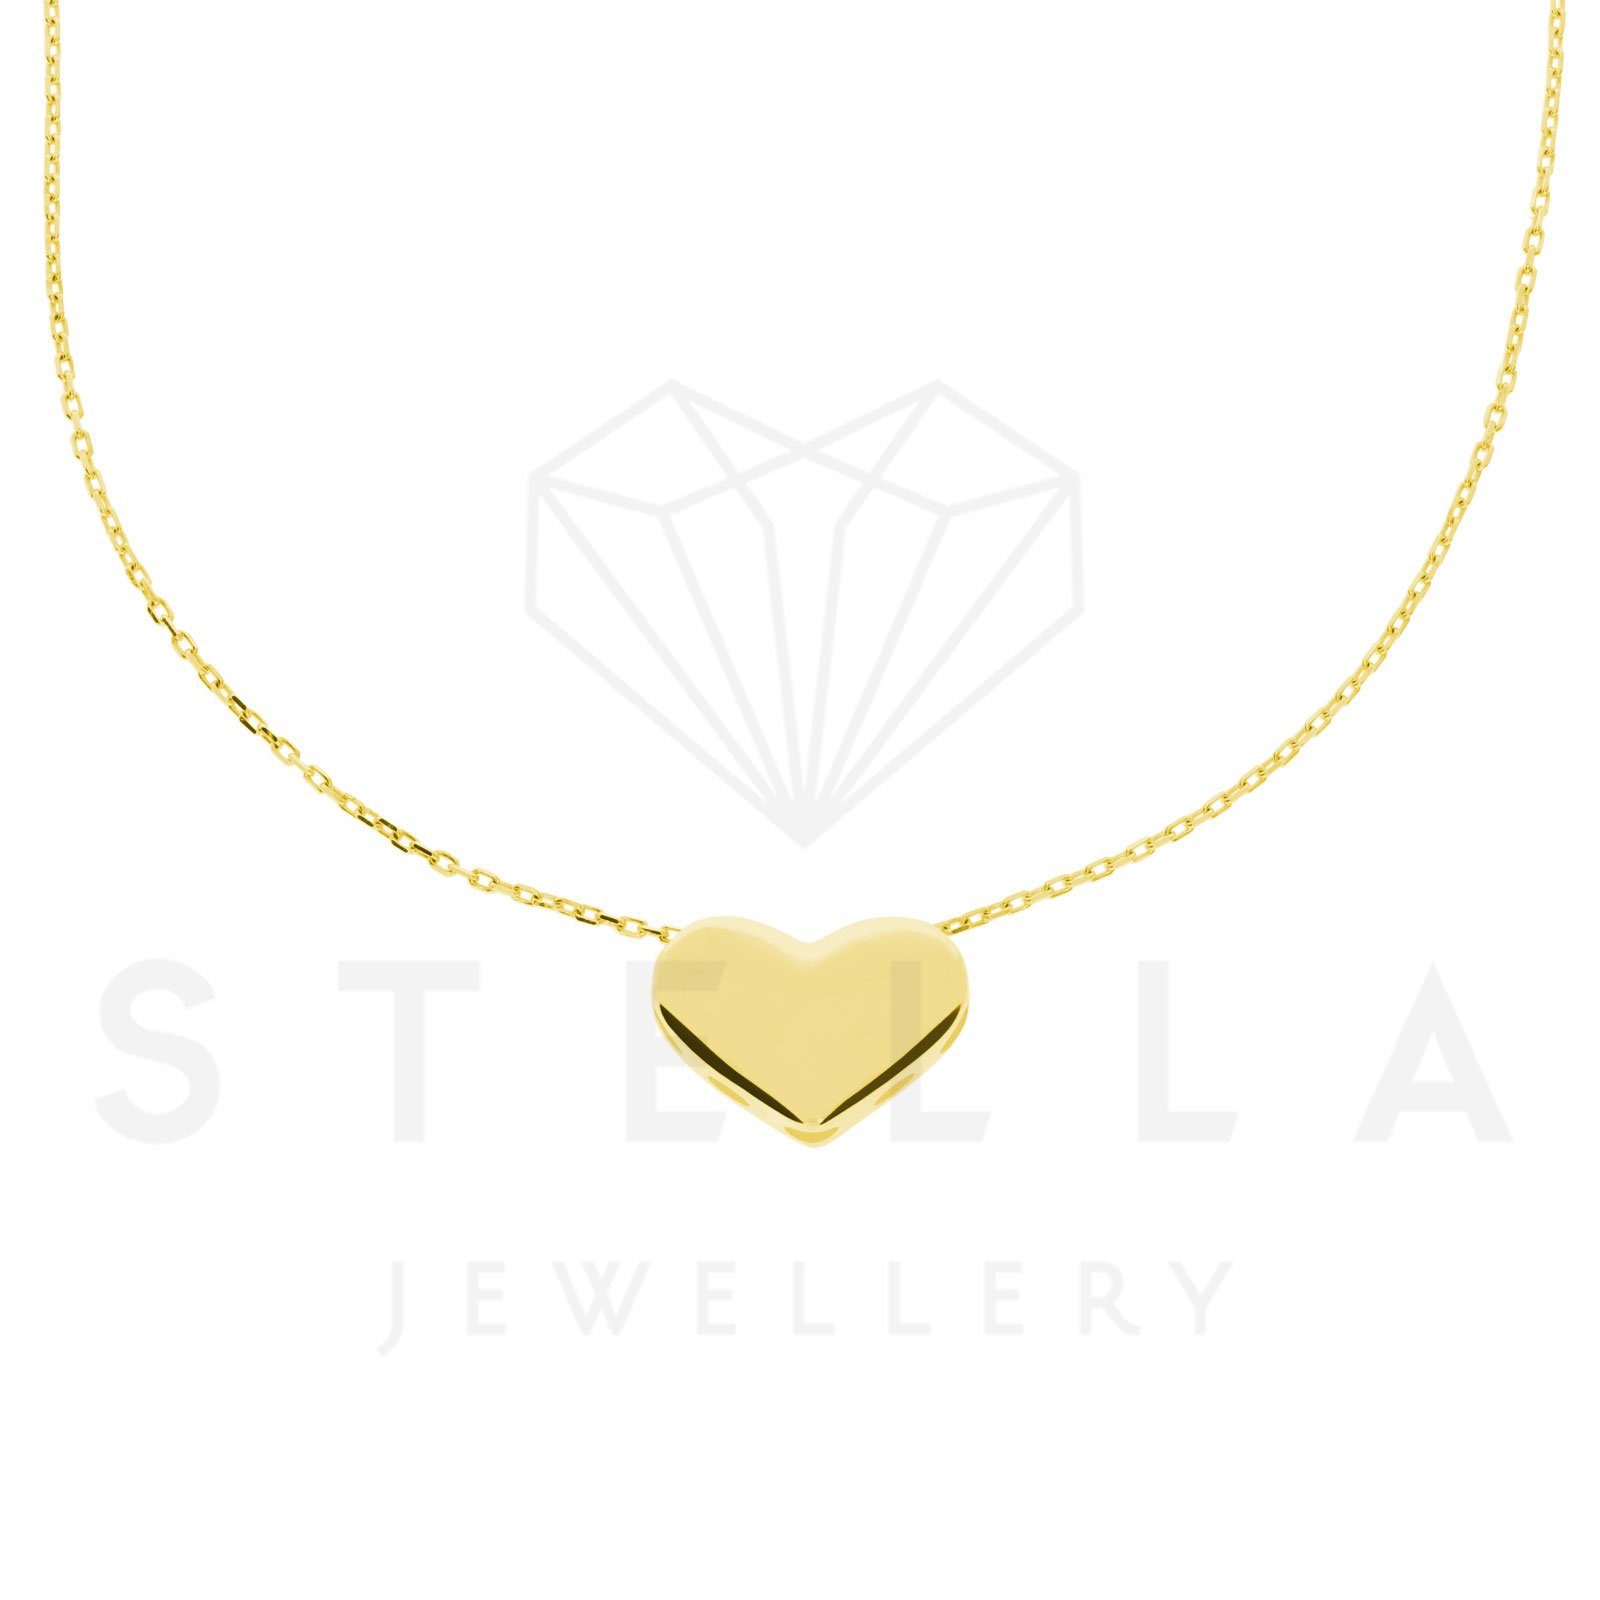 Stella-Jewellery Collier Damen Kette mit Herz Anhänger 585er Gelbgold 45 cm (inkl. Etui), 585 Gelbgold 7 Plättchen